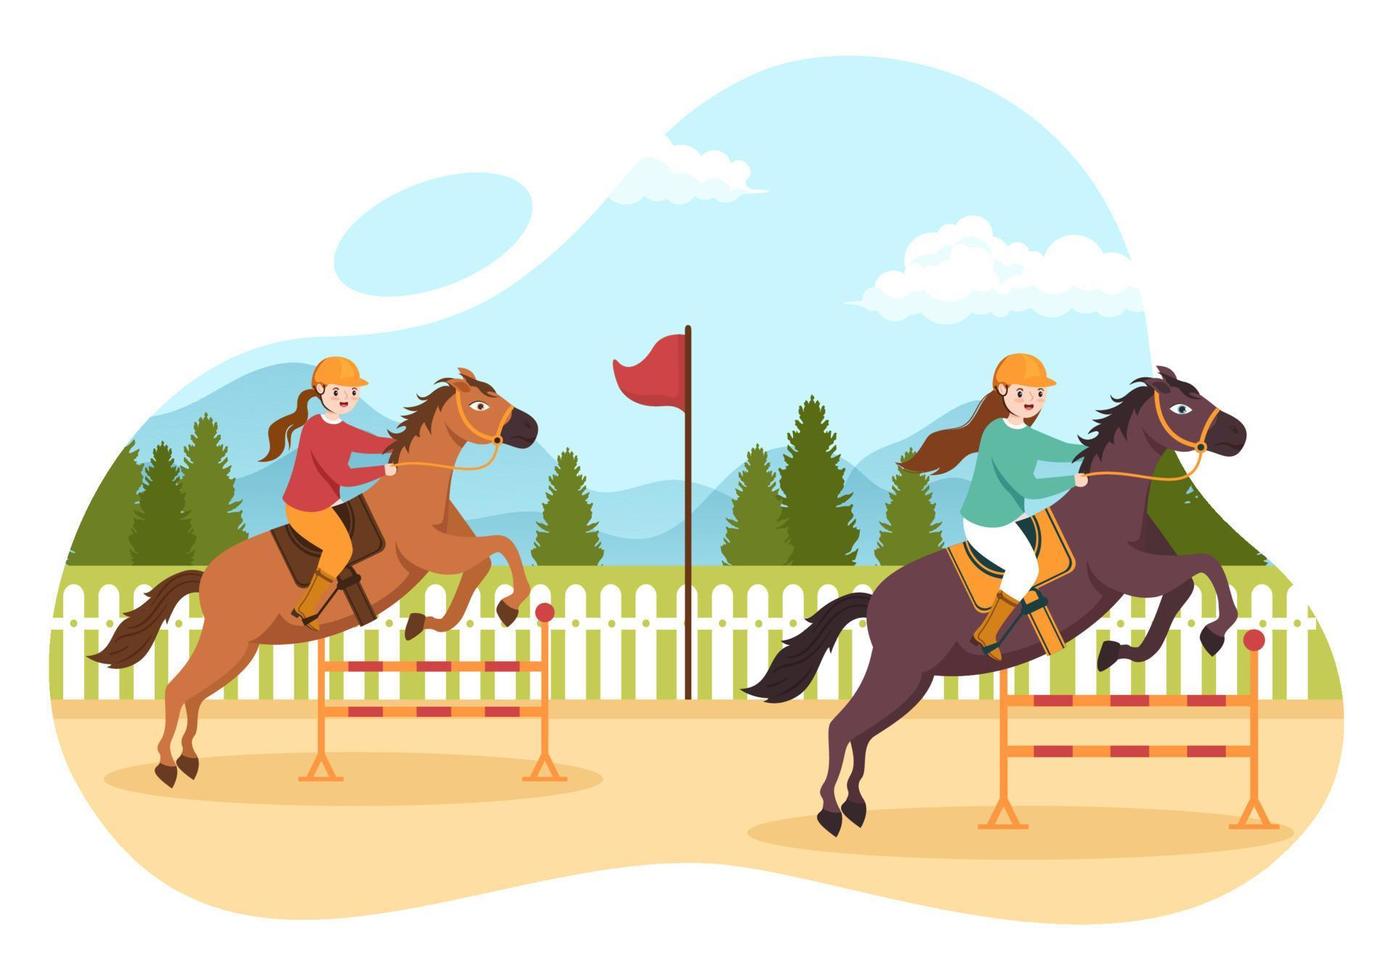 paardenrace cartoon afbeelding met karakters mensen die competitie sport kampioenschappen of paardensport doen in de renbaan vector